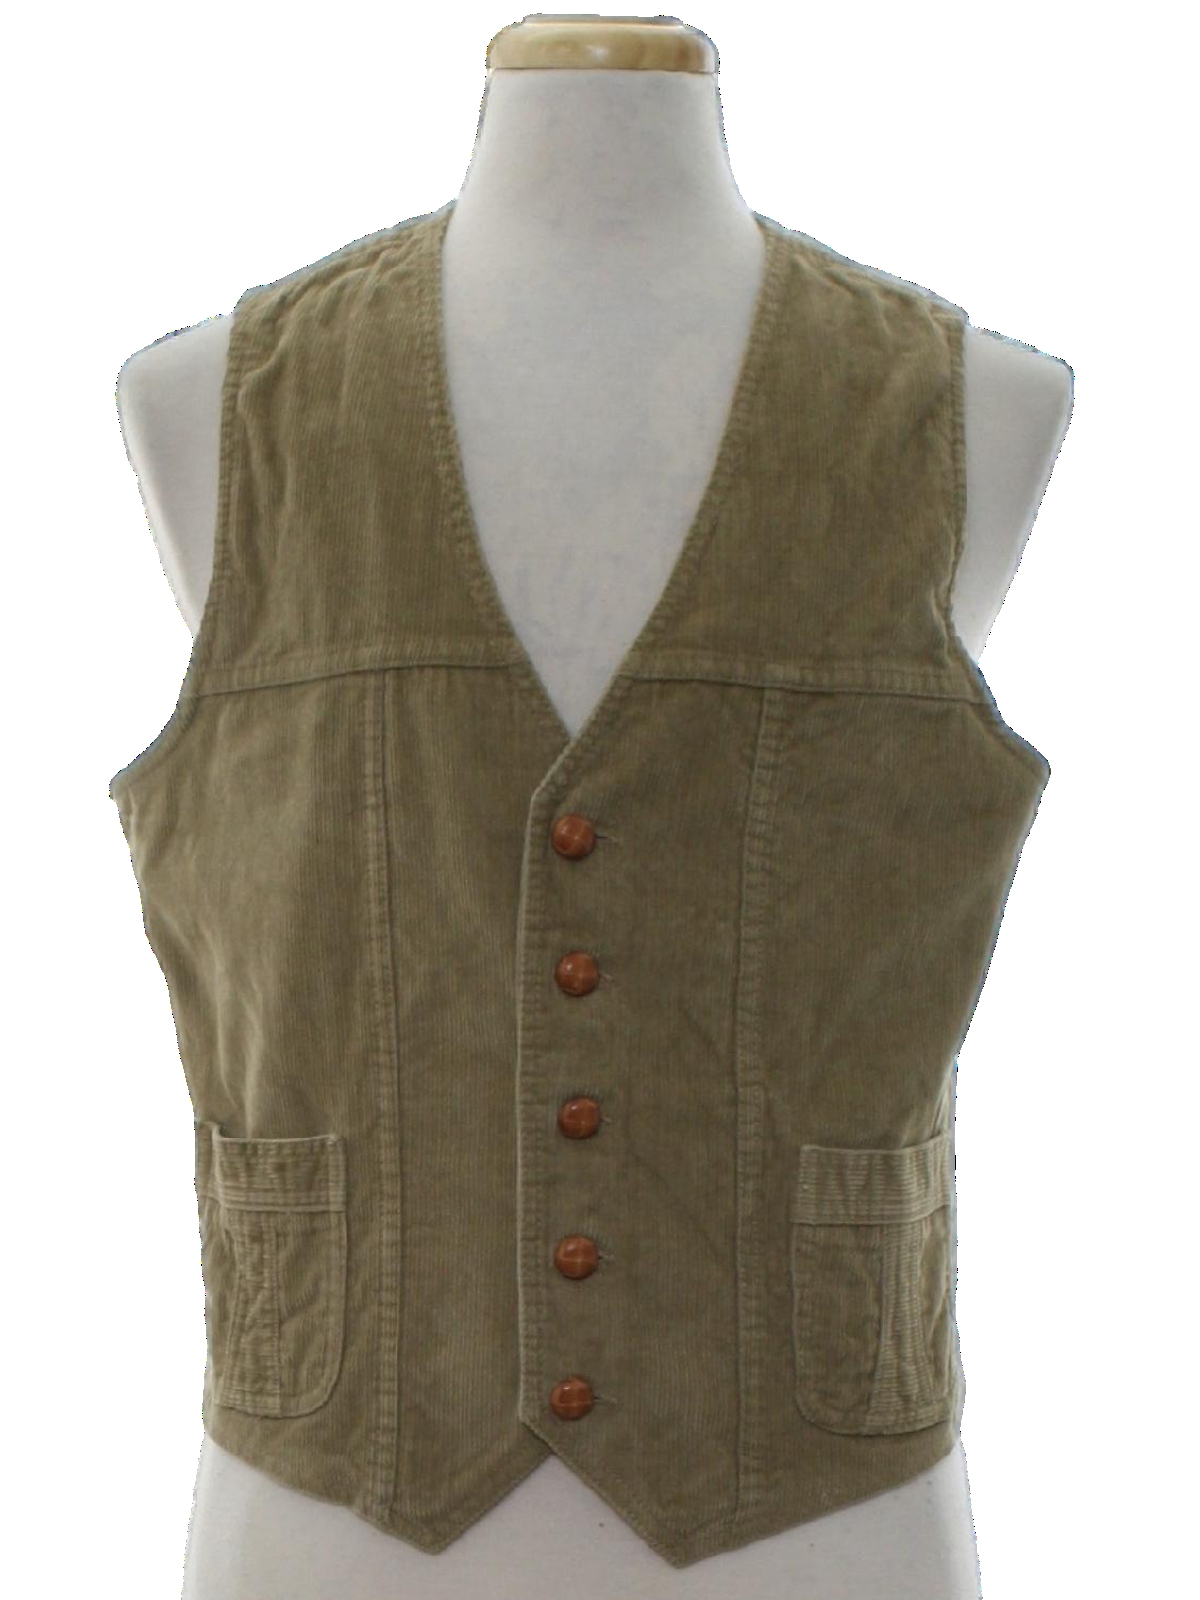 1970's Retro Vest: 70s -no label- Mens taupe background cotton corduroy ...